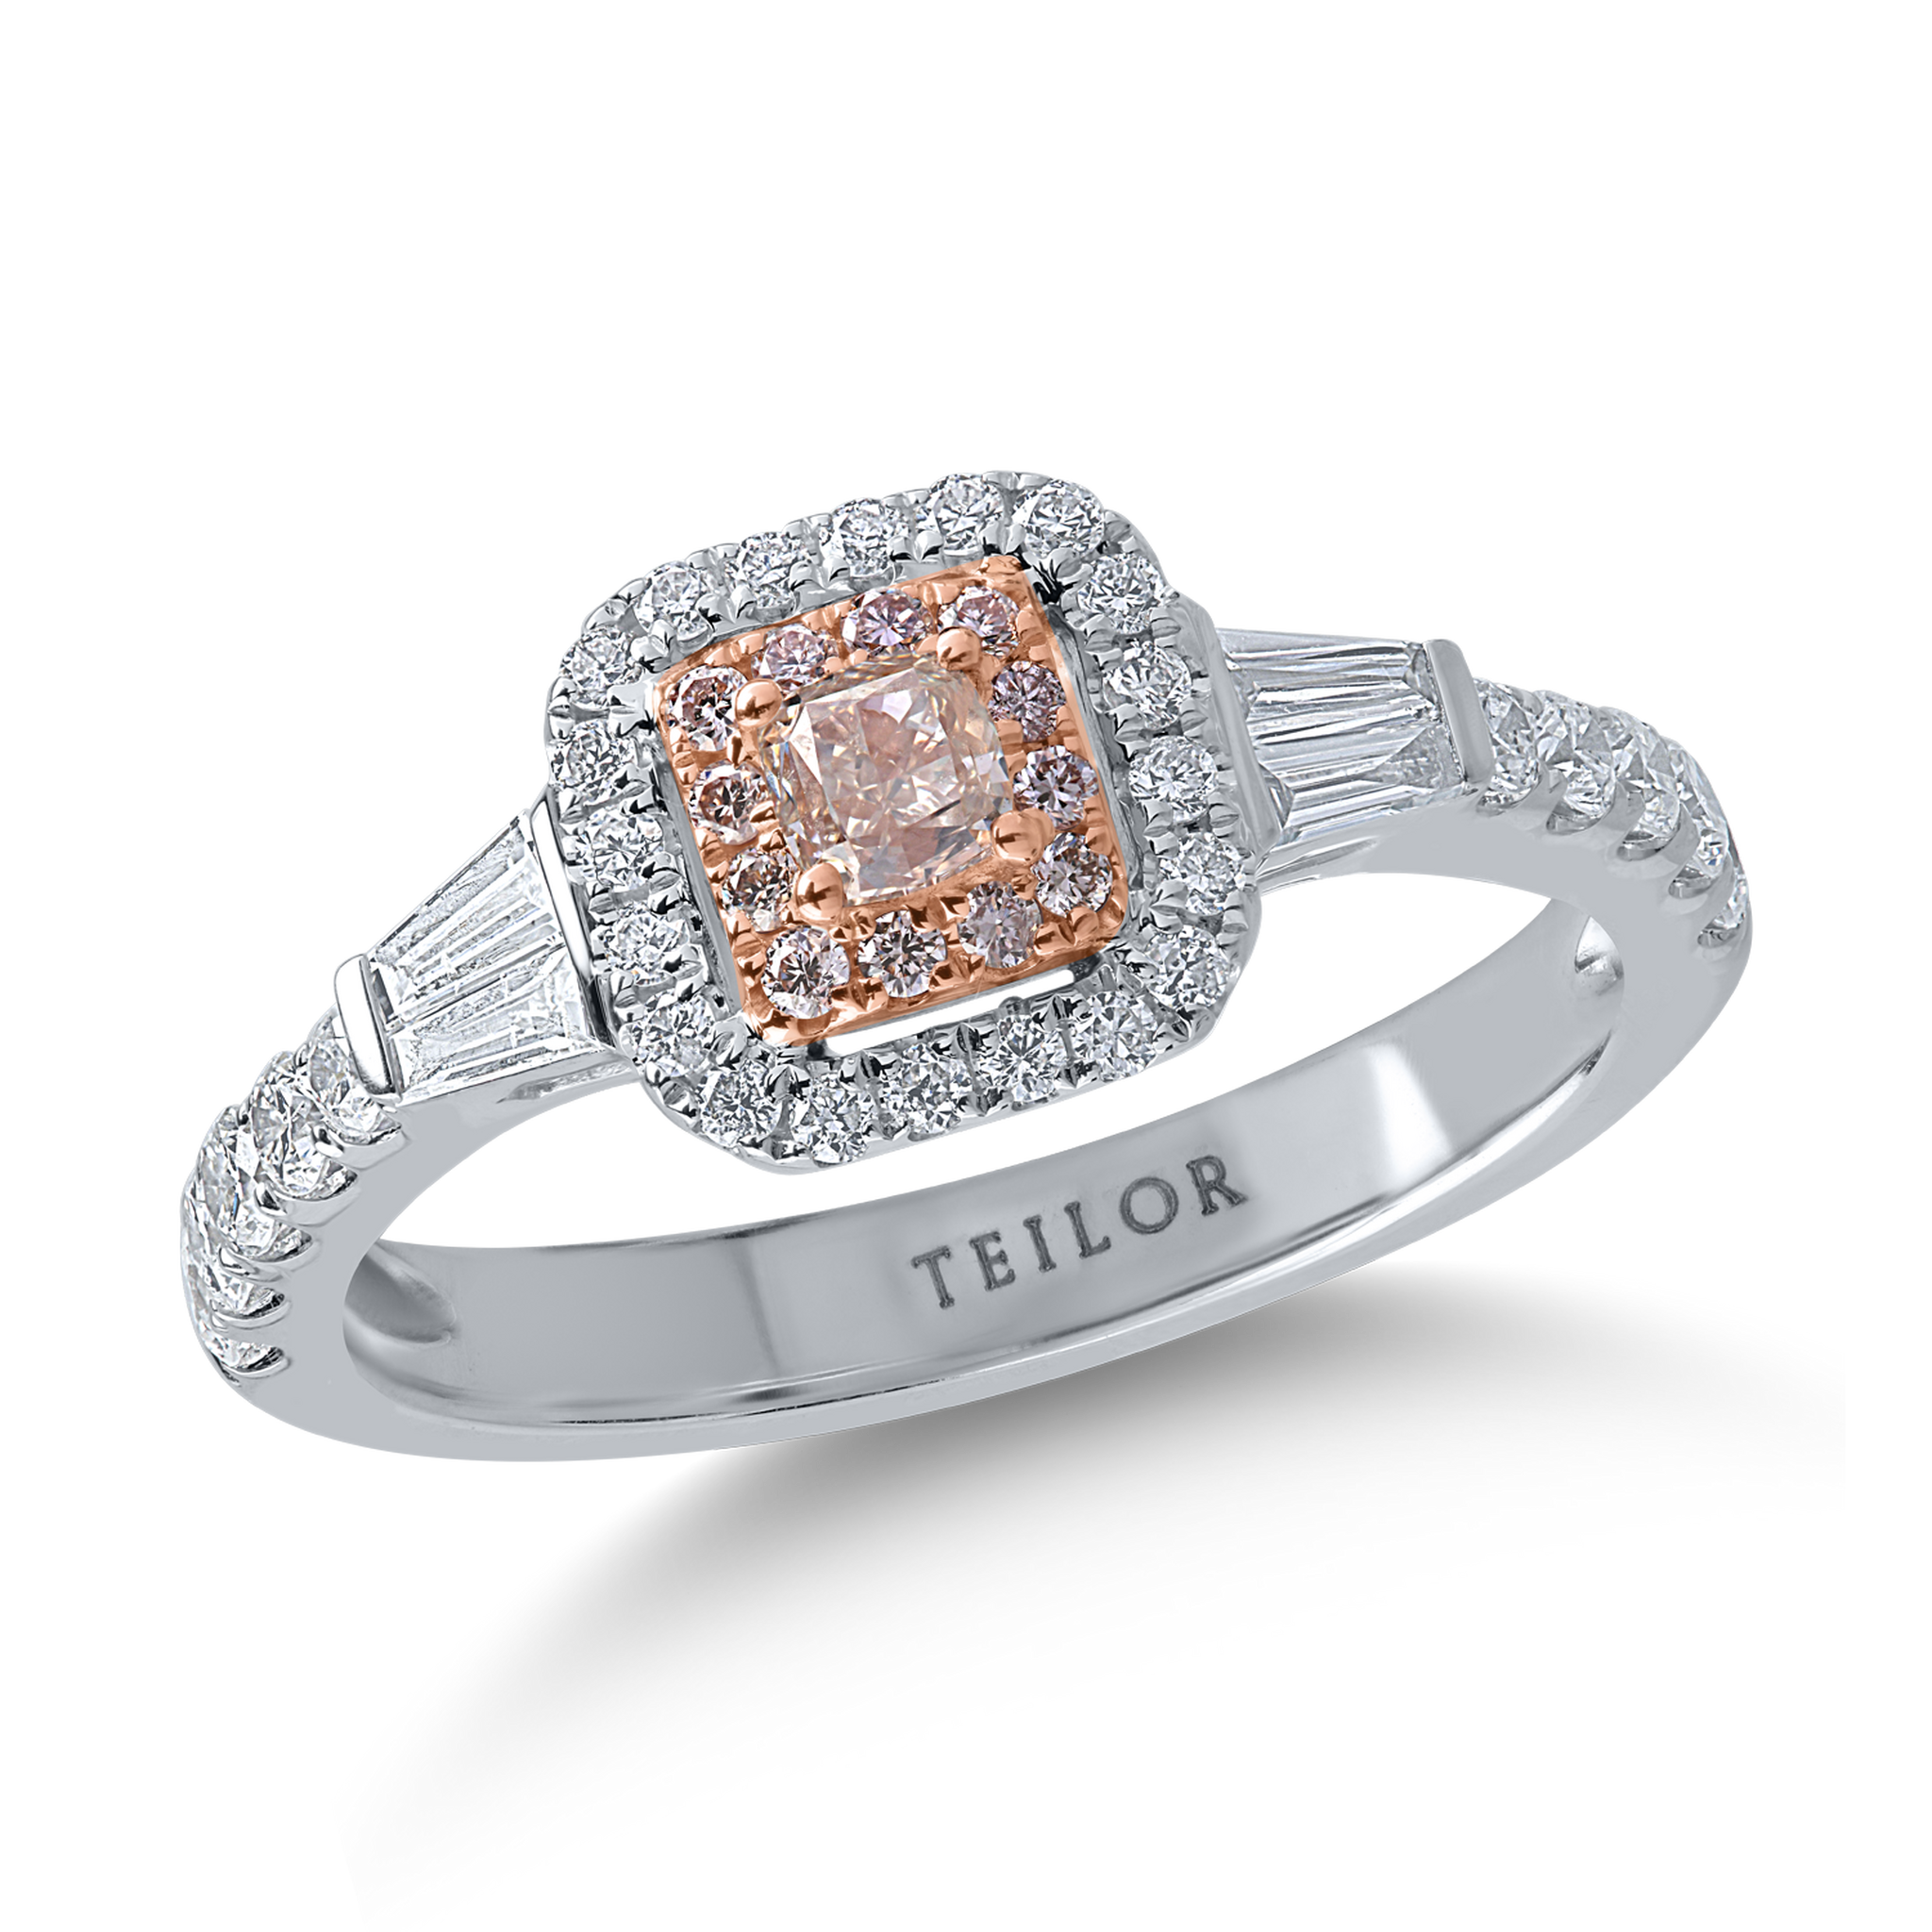 Pierścionek z białego różowego złota z bezbarwnymi diamentami o masie 0.62ct i różowymi diamentami o masie 0.29ct